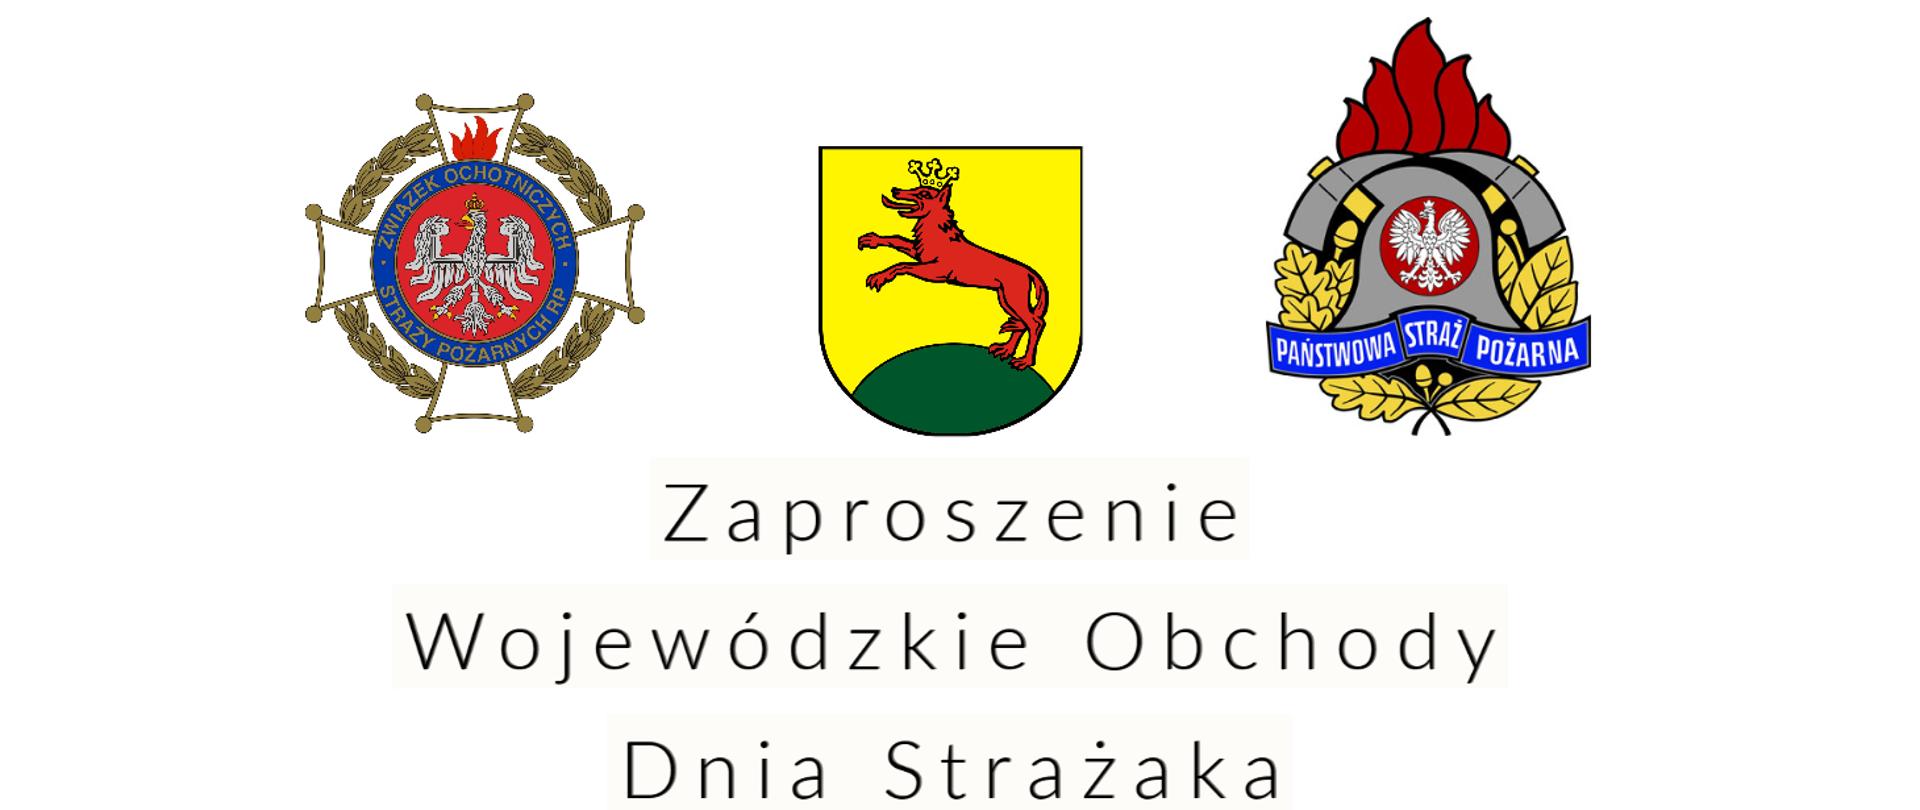 Zaproszenie Wojewódzkie Obchody Dnia Strażaka